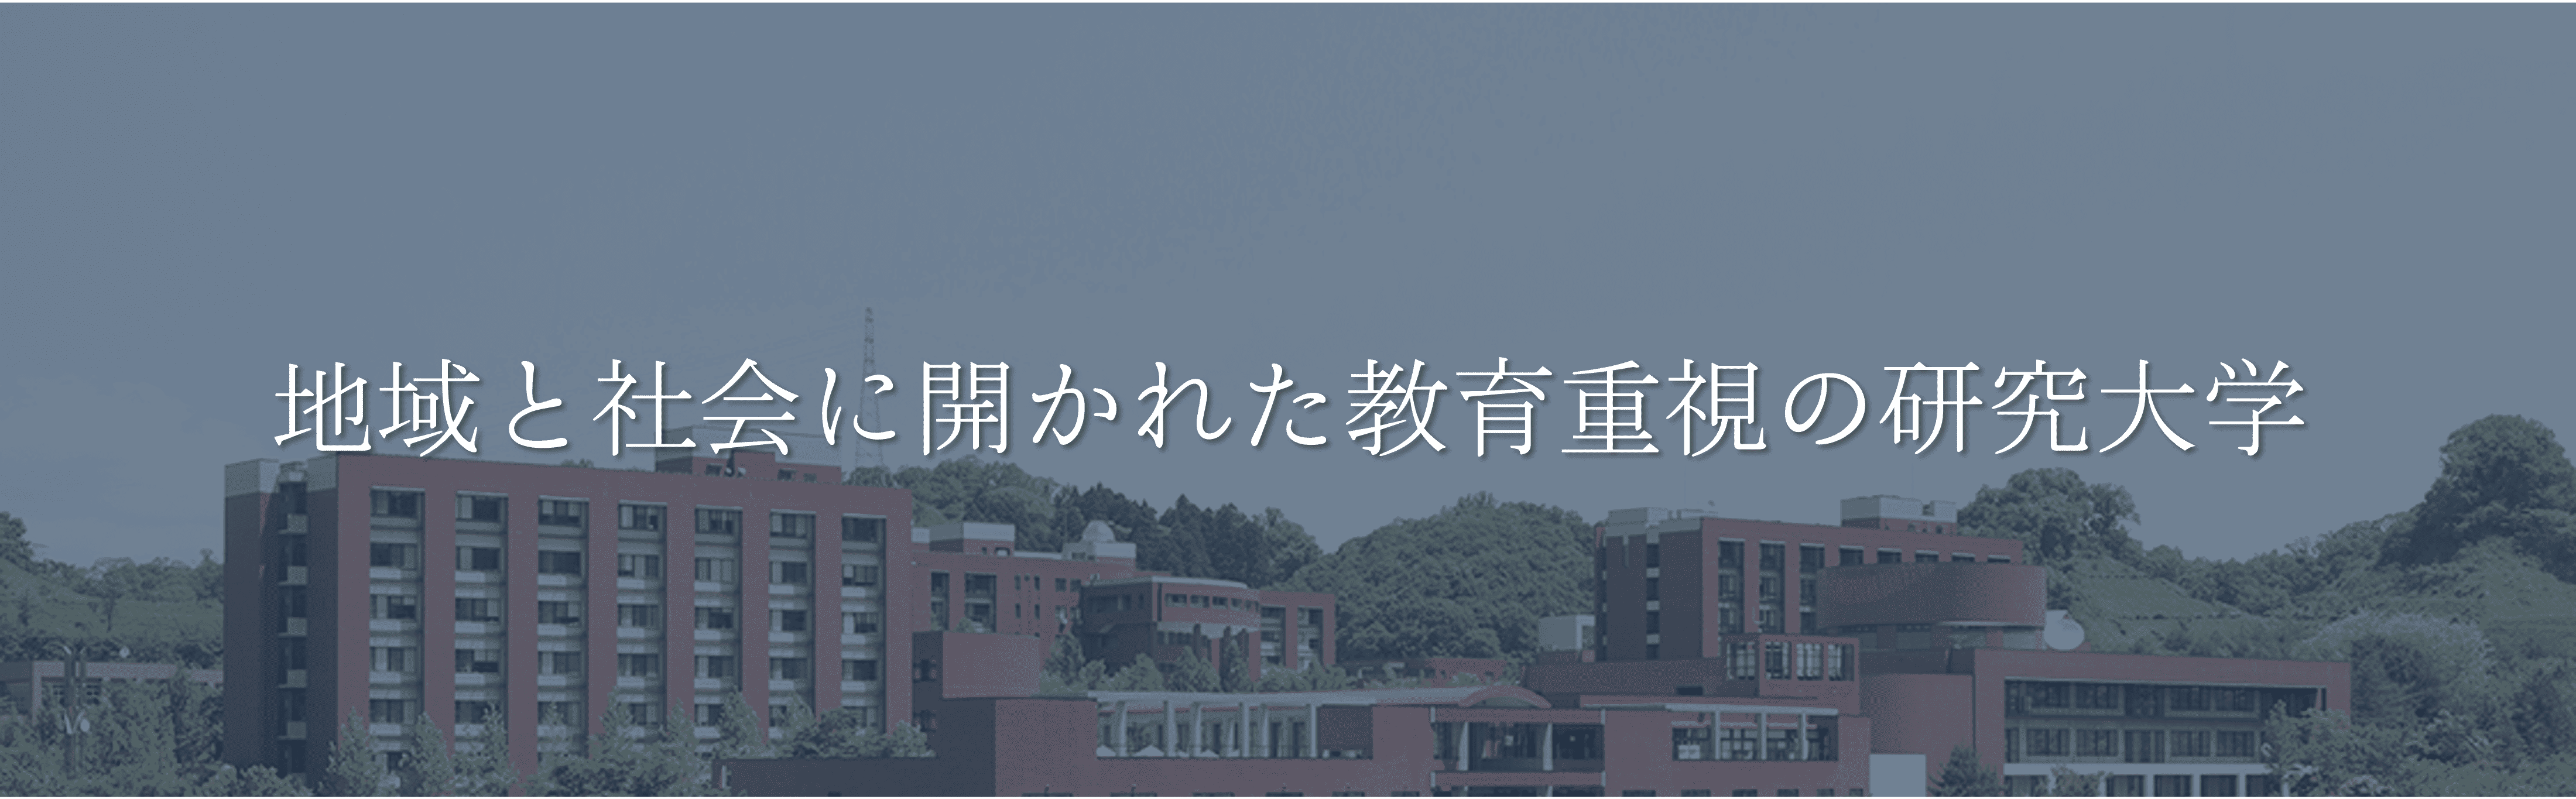 金沢大学 モットー